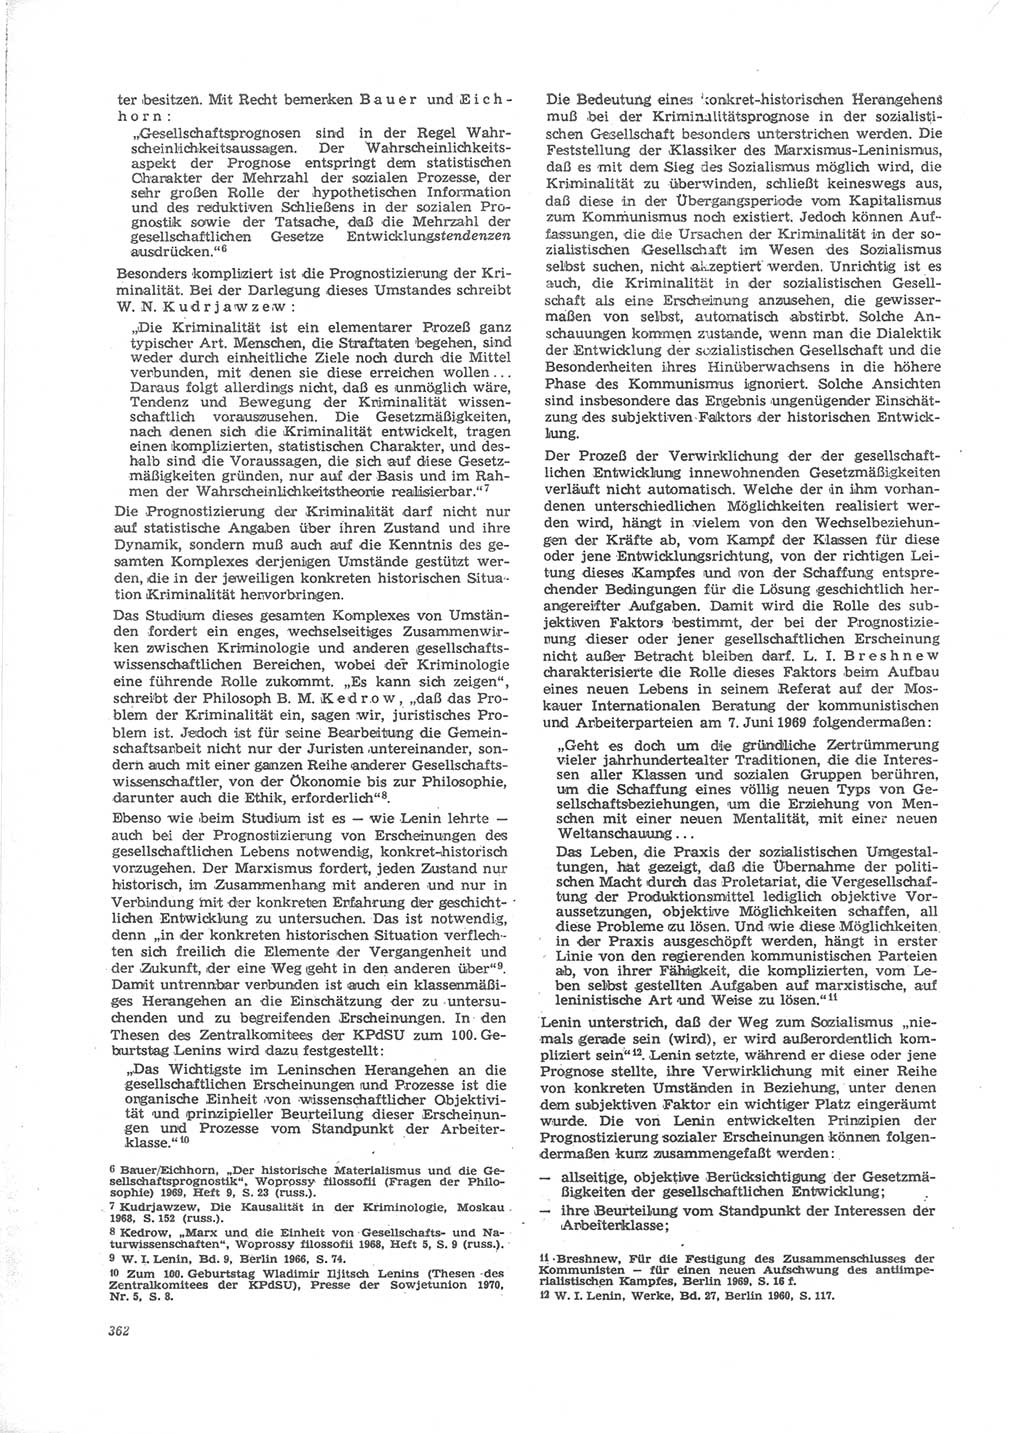 Neue Justiz (NJ), Zeitschrift für Recht und Rechtswissenschaft [Deutsche Demokratische Republik (DDR)], 24. Jahrgang 1970, Seite 362 (NJ DDR 1970, S. 362)